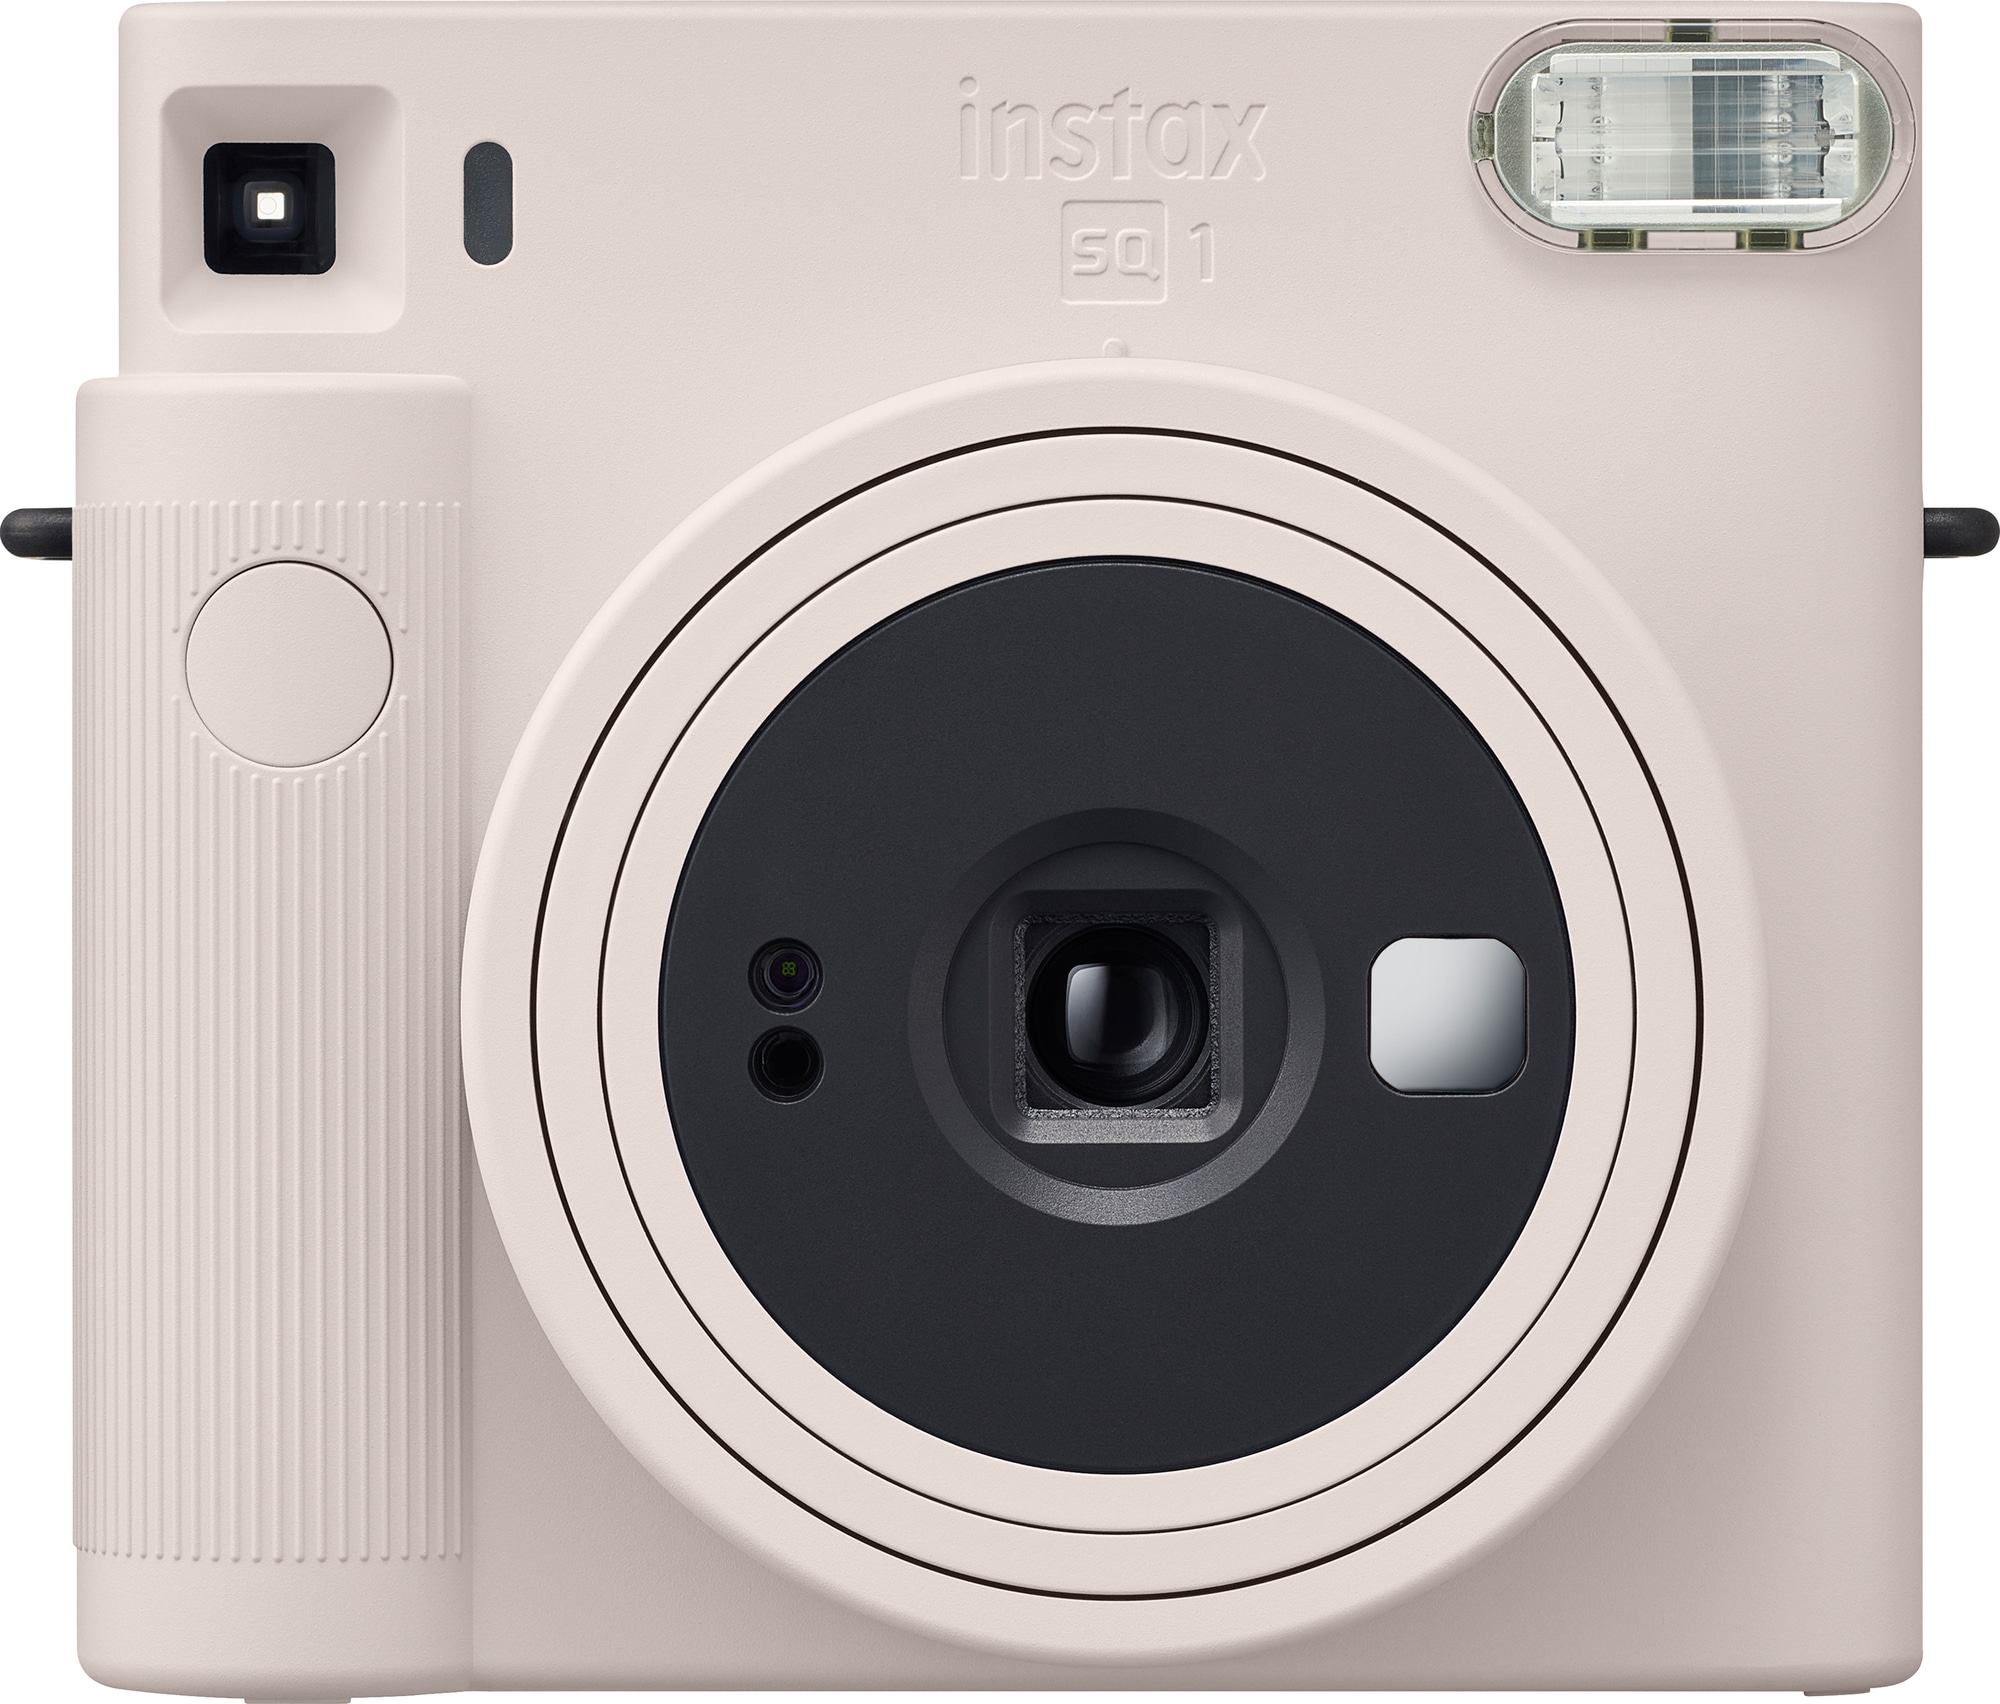 Fujifilm Instax Square SQ1 instant kamera (hvid) | Elgiganten